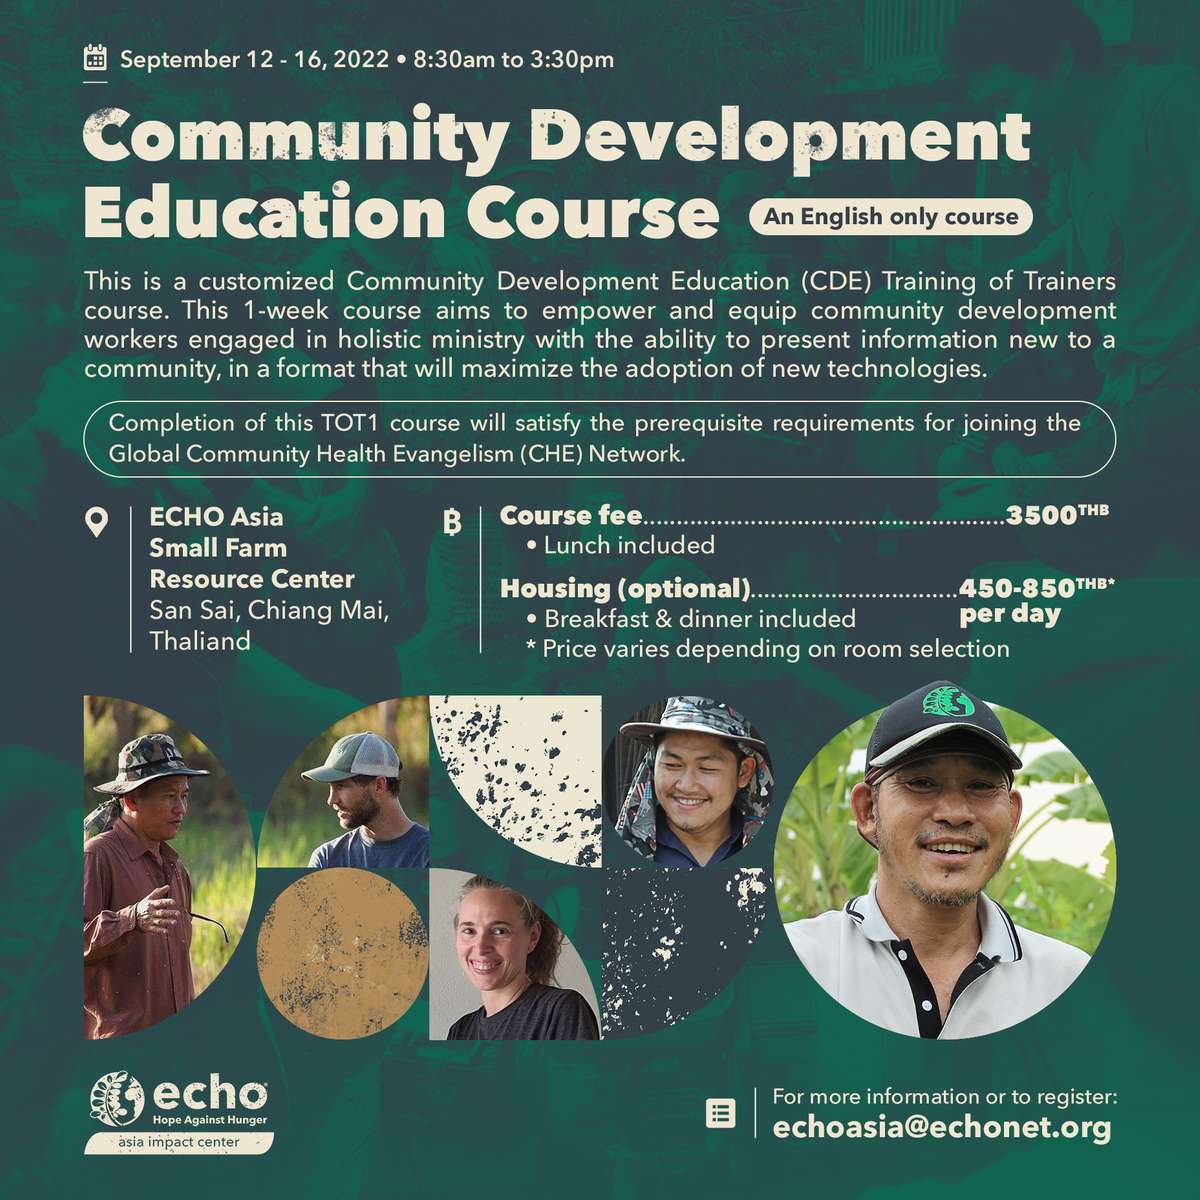 Community Dvlpmt Education course flyer